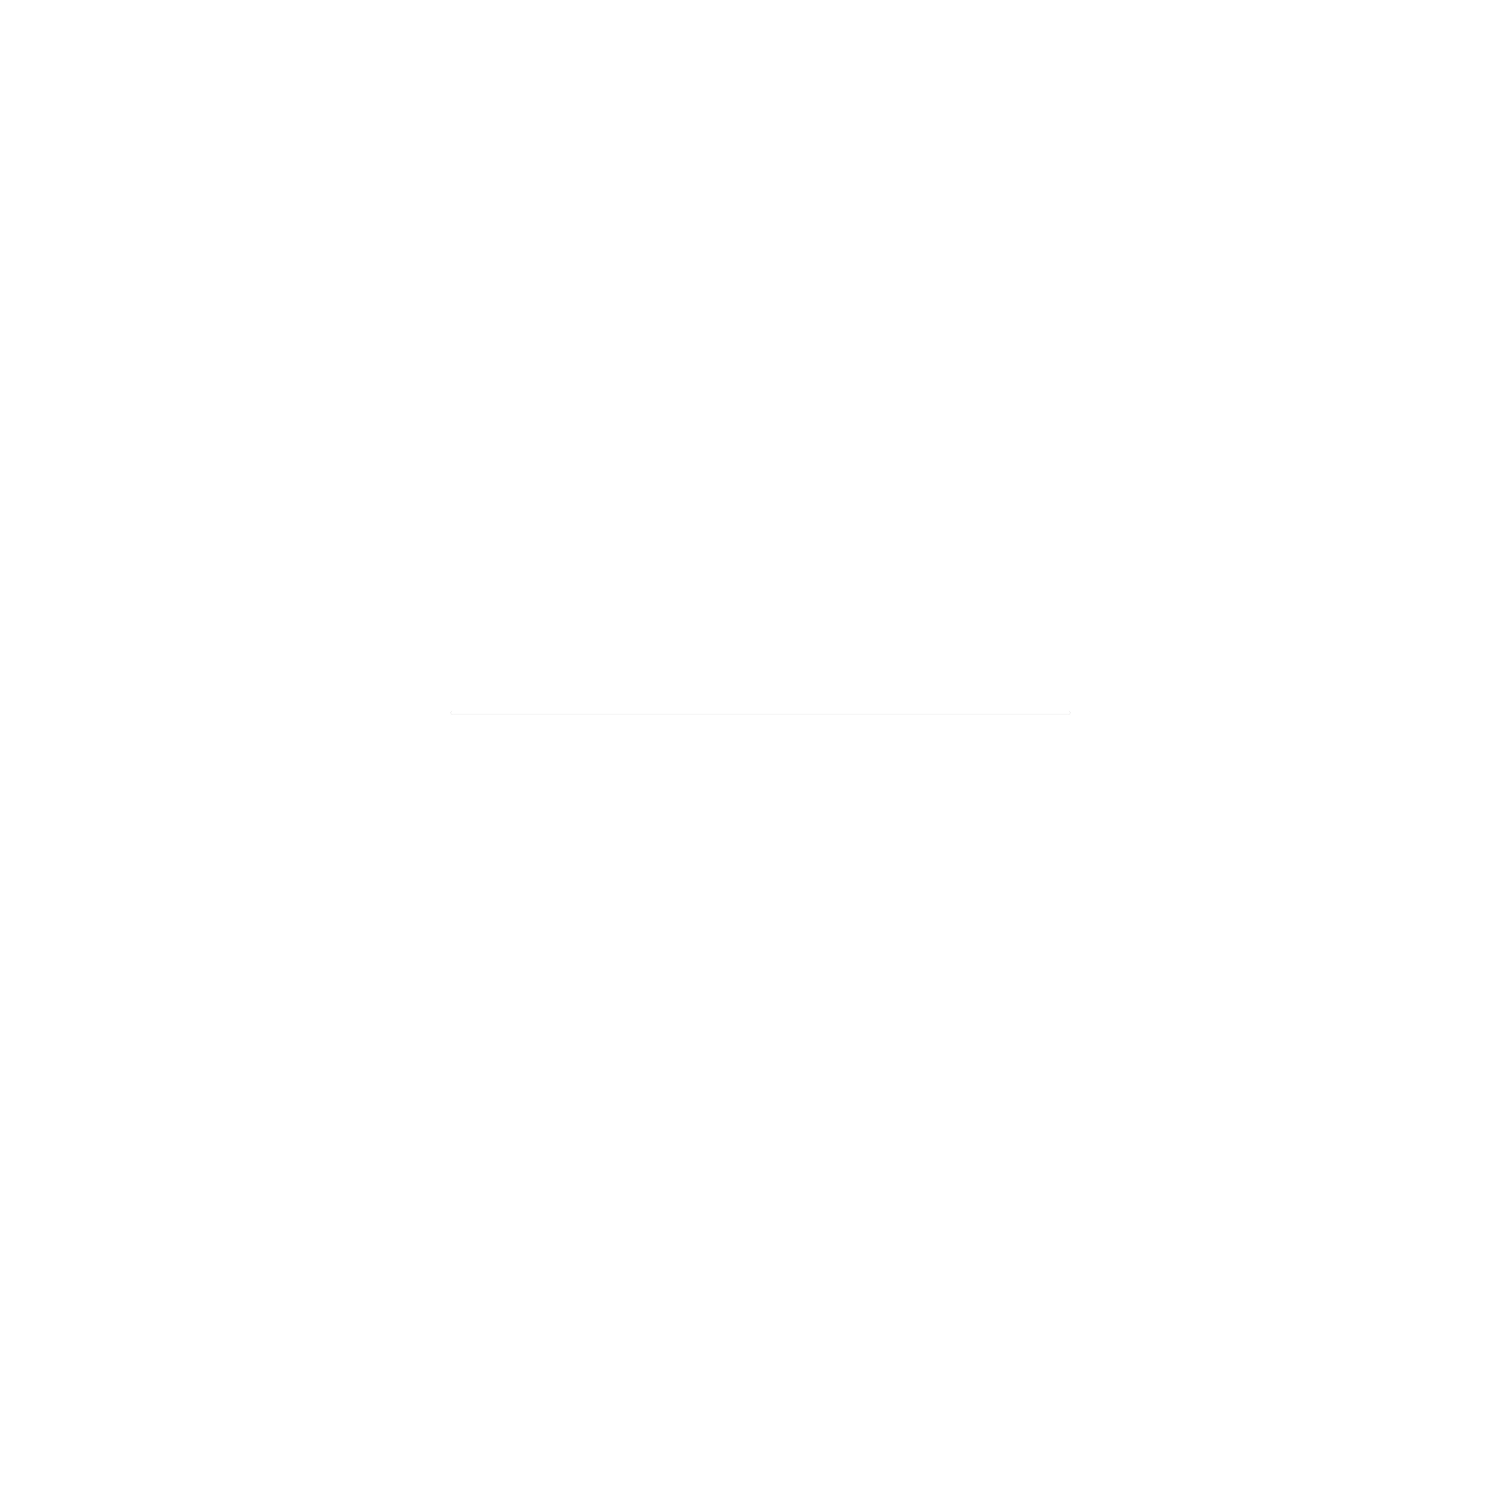 edography